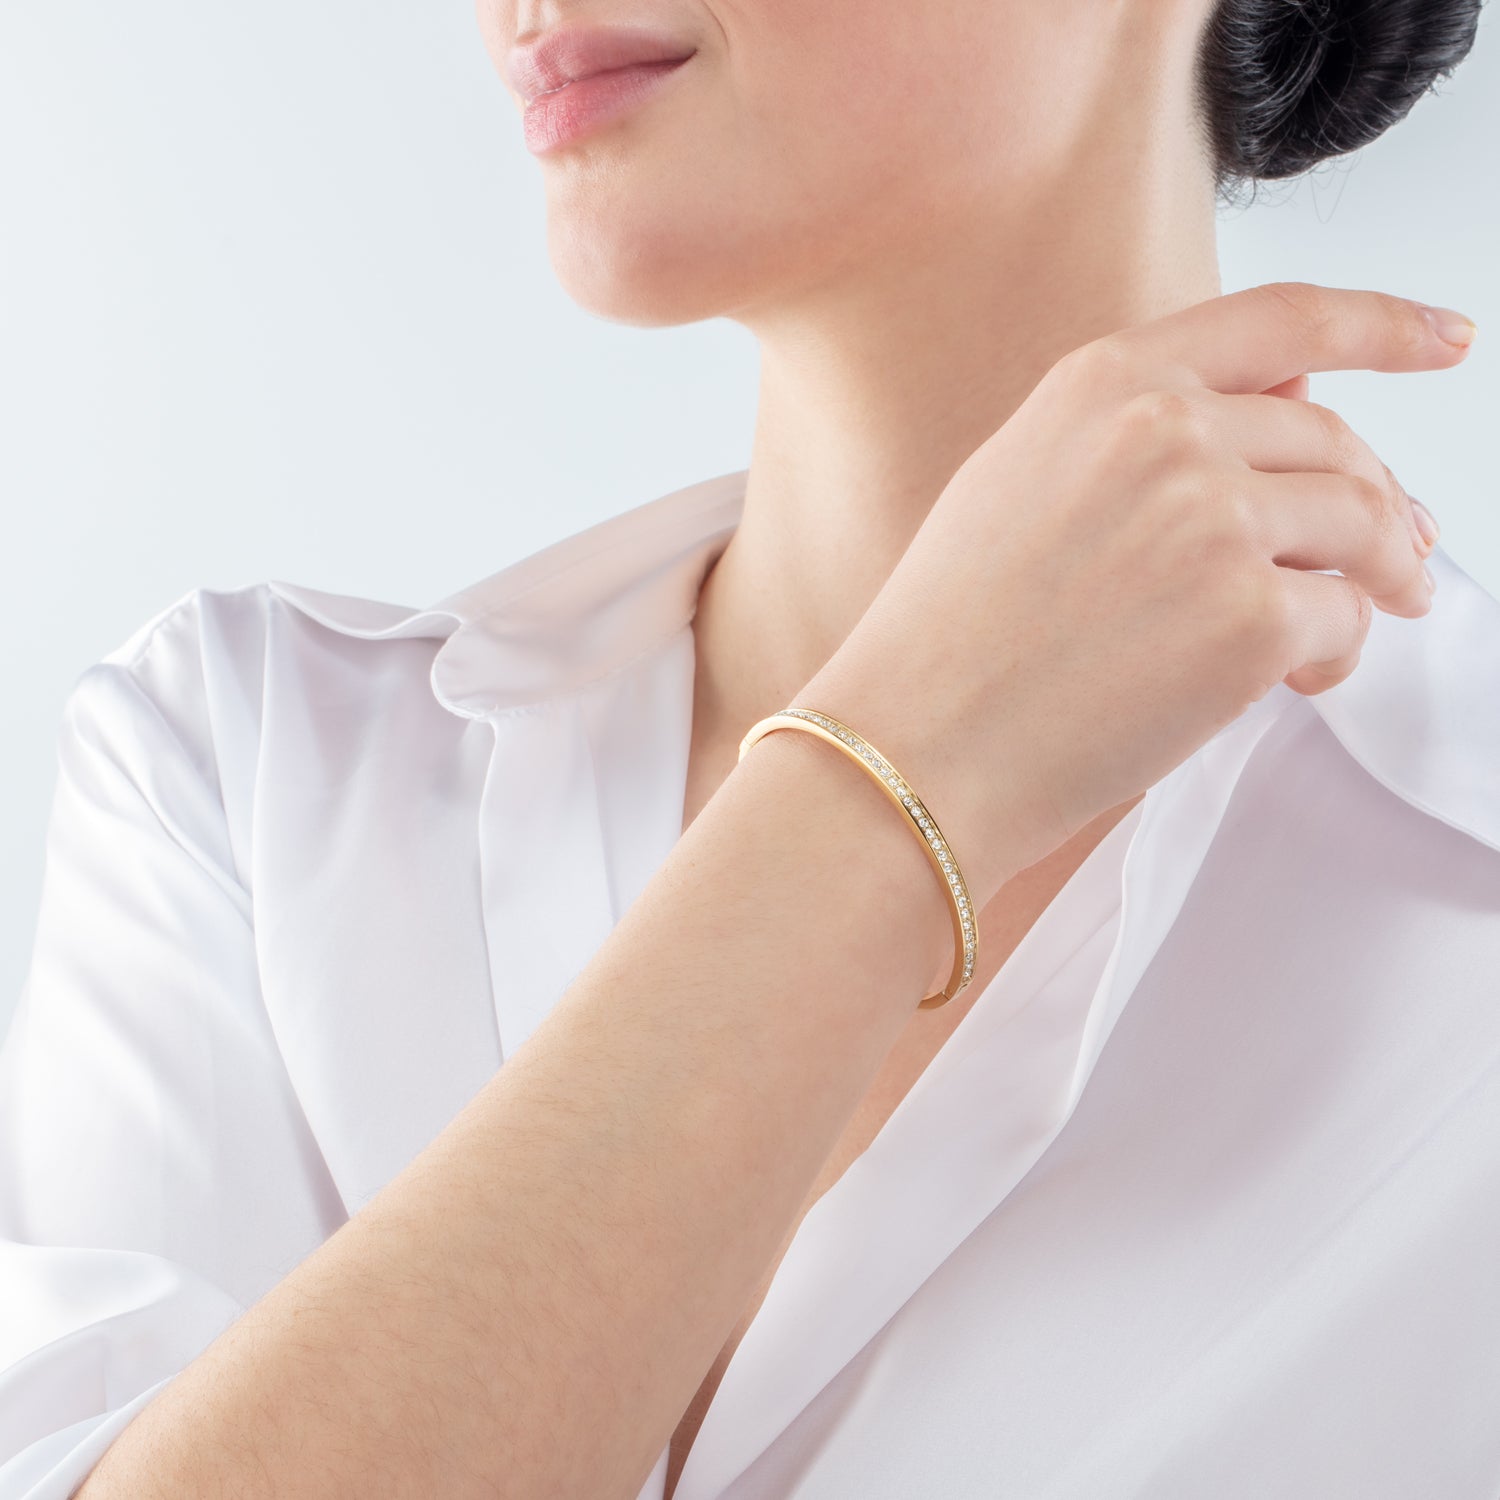 Collection 0127 - Golden White - Size M - Bangle bracelet - Cœur de Lion 